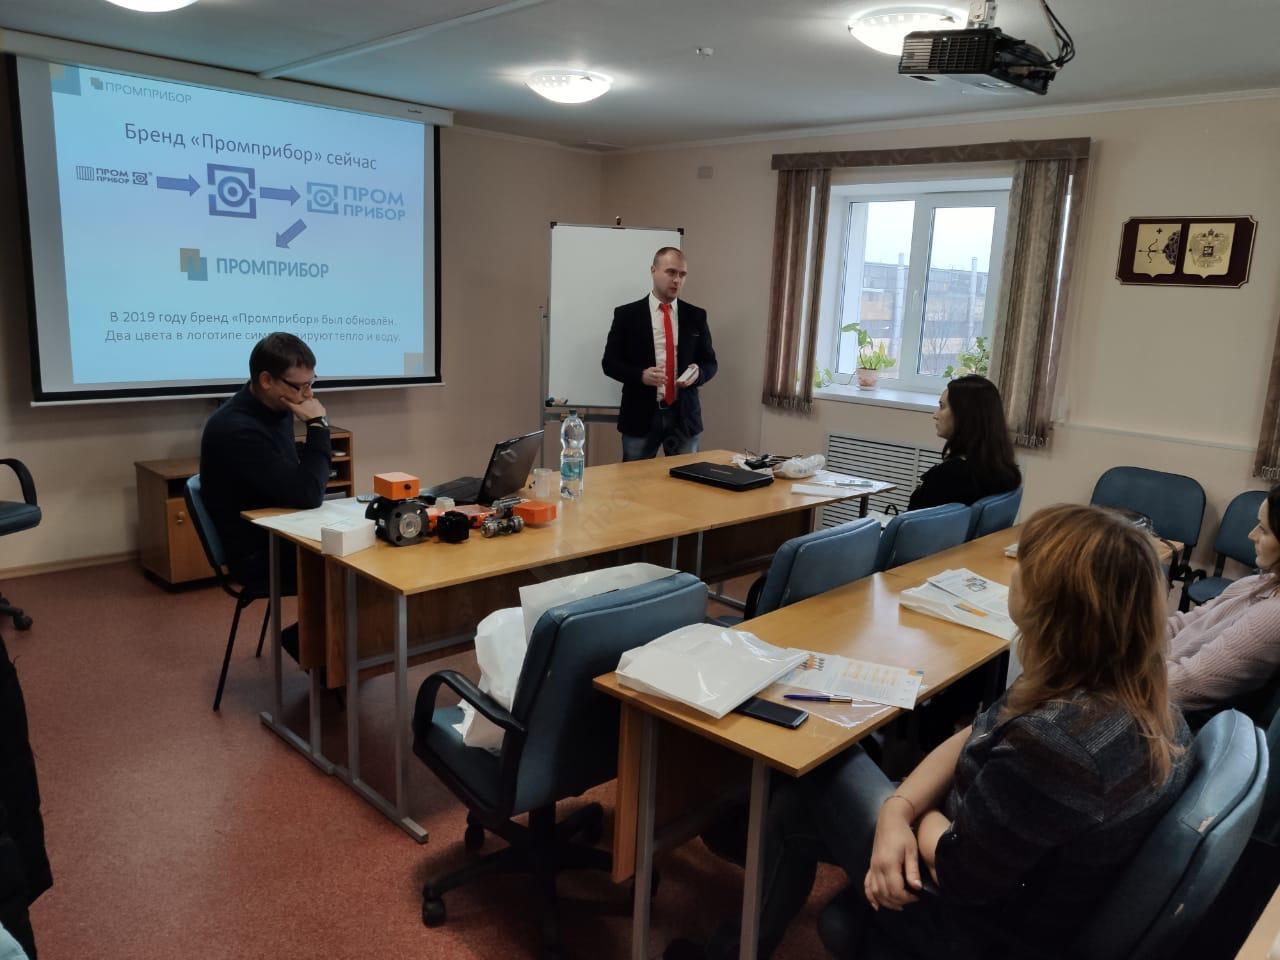 Наши сотрудники 7 ноября 2019 года провели обучающий семинар в городе Киров по продукции бренда «Промприбор»